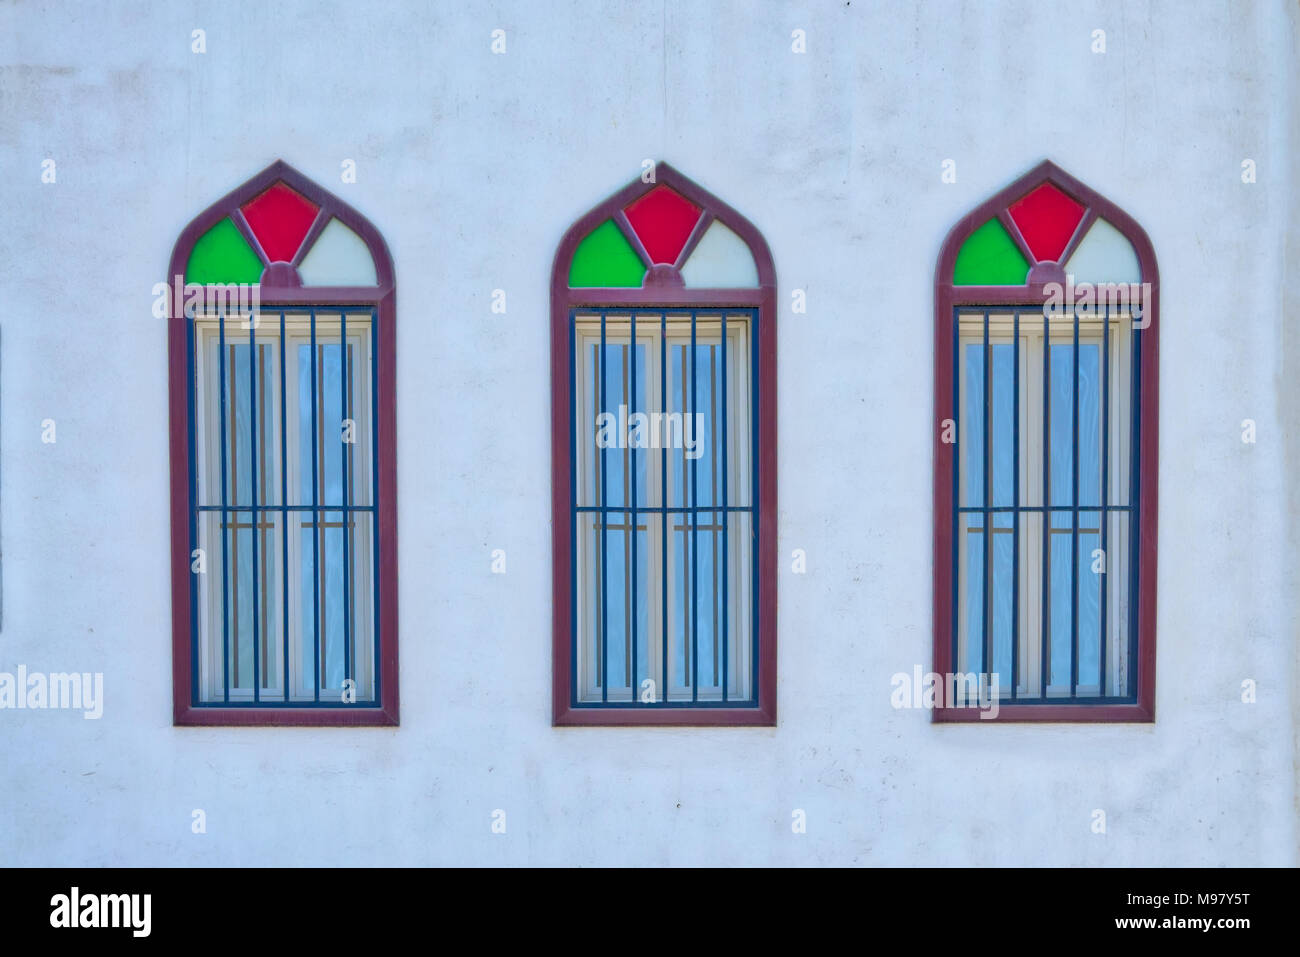 Alte, bunte arabischen Stil Fenster in Dreiergruppen - Muscat, Oman. Stockfoto